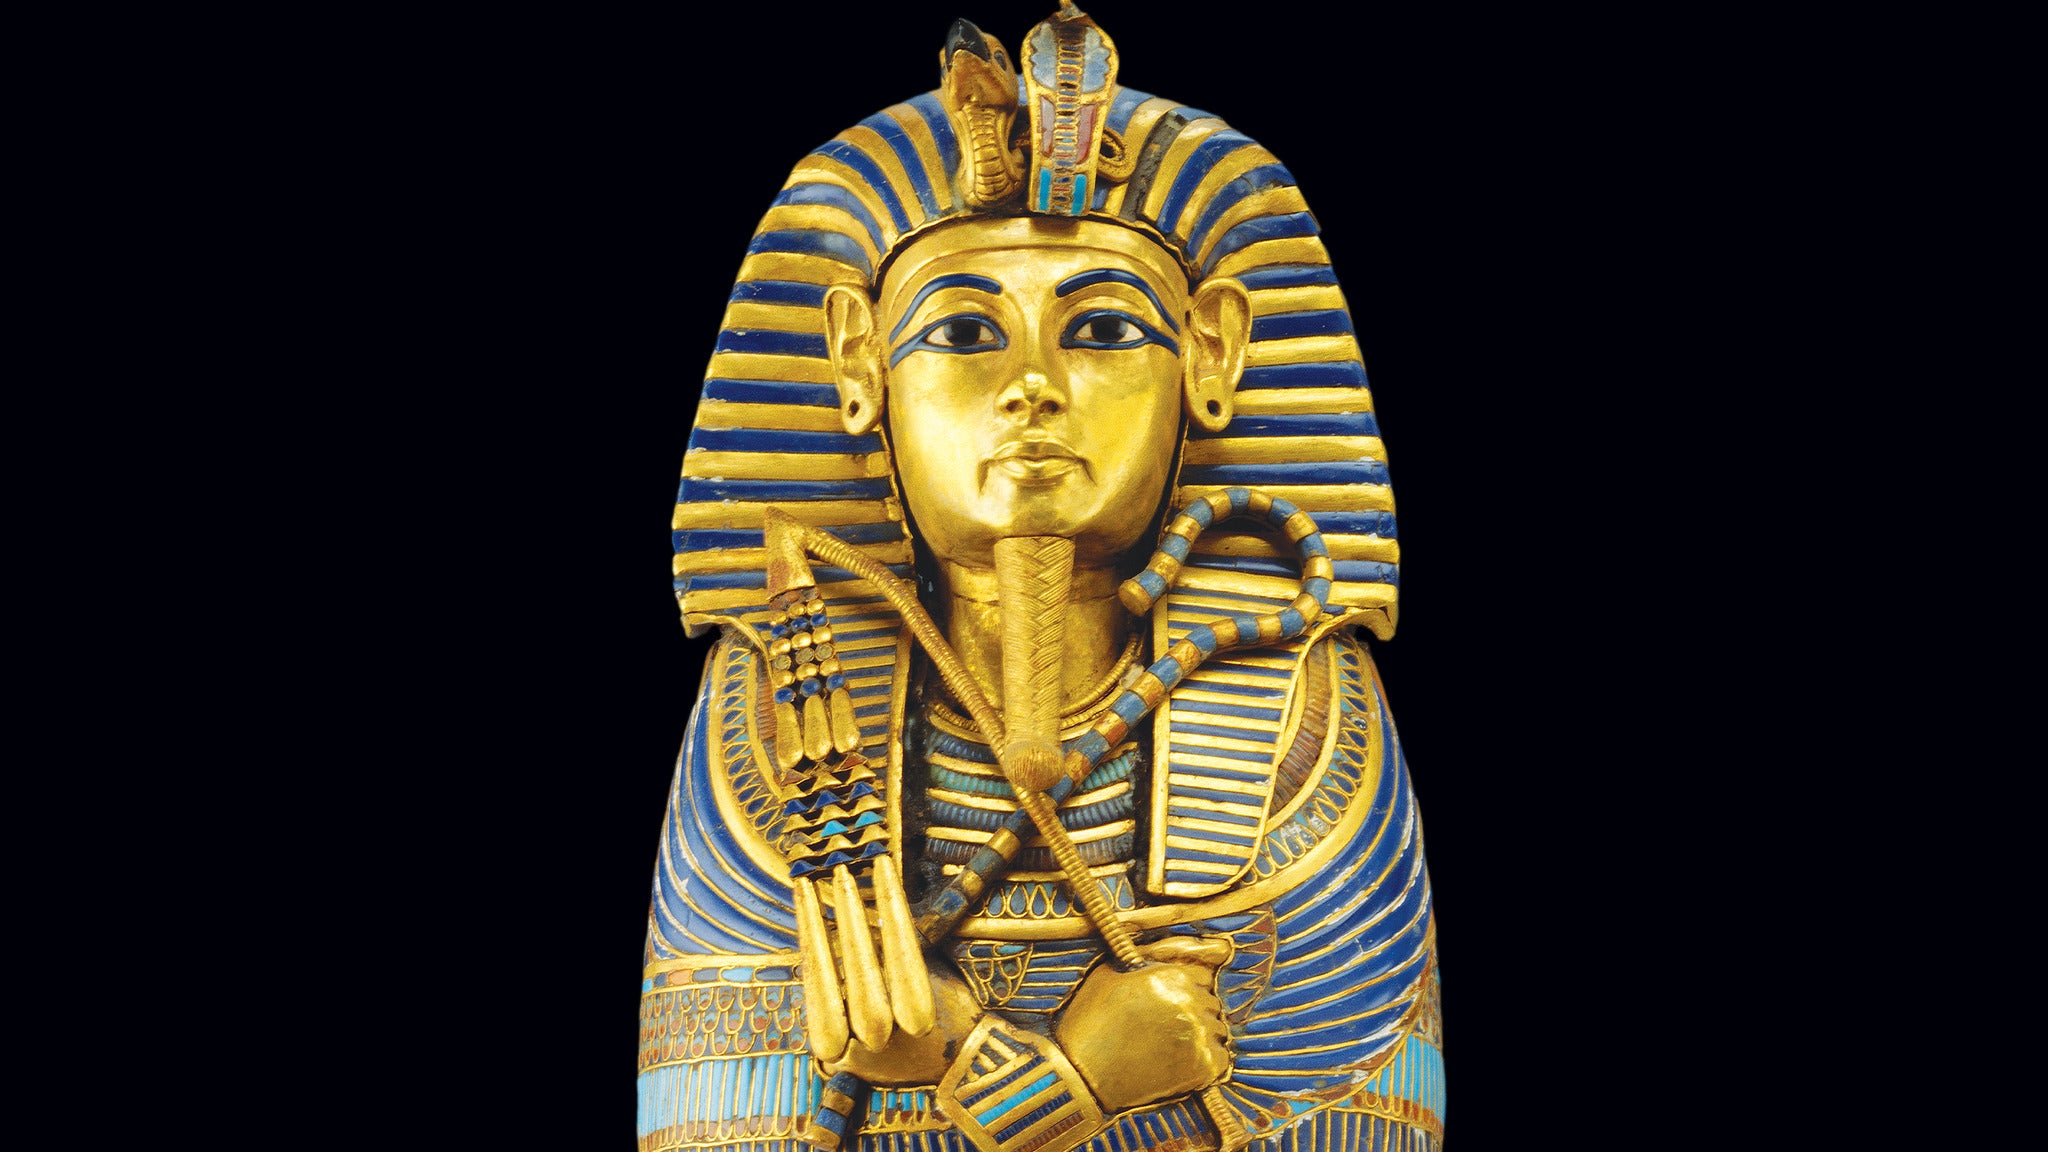 KING TUT: Treasures of the Golden Pharaoh presale information on freepresalepasswords.com